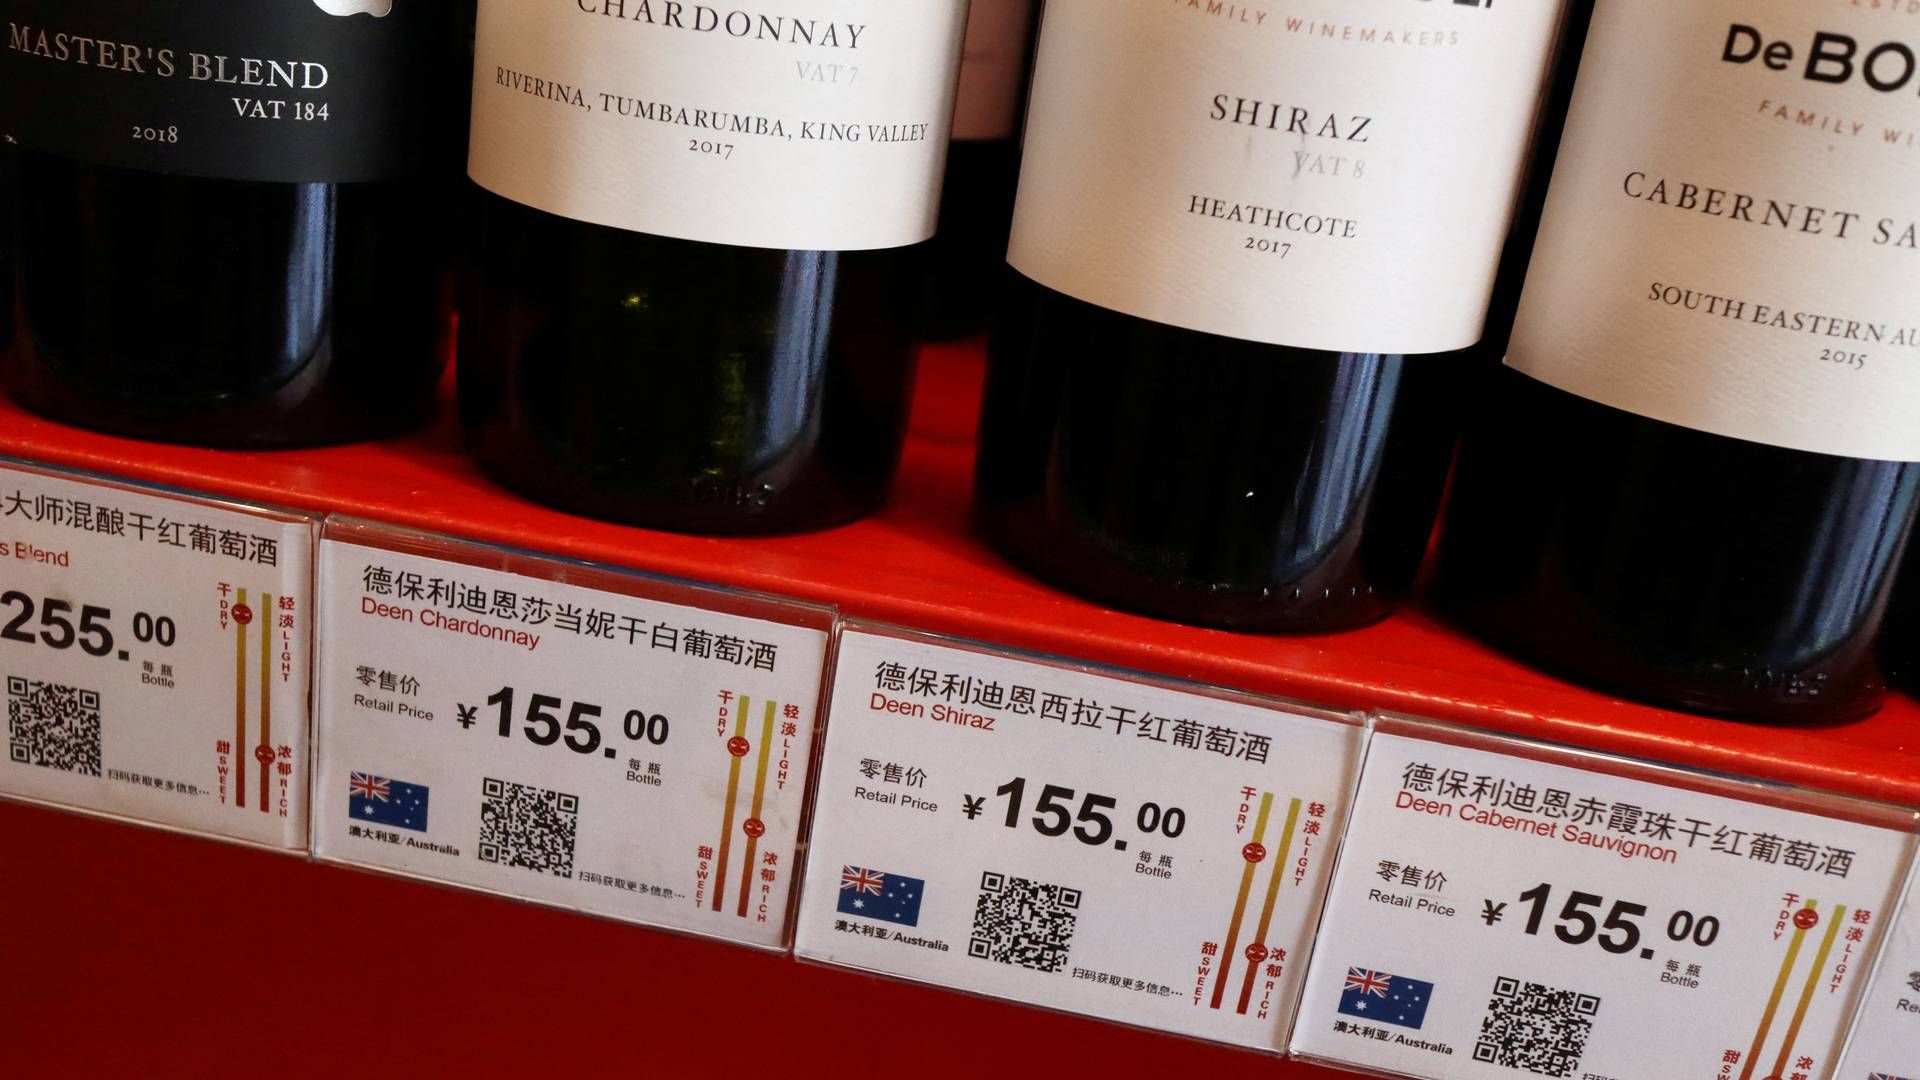 Kina er det vigtigste eksportmarked for australske vinhandlere. Her flasker i en vinbutik i Beijing i 2020. Siden er der ikke blevet sendt mange flasker mellem de to lande. Foto: Florence Lo/Reuters/Ritzau Scanpix